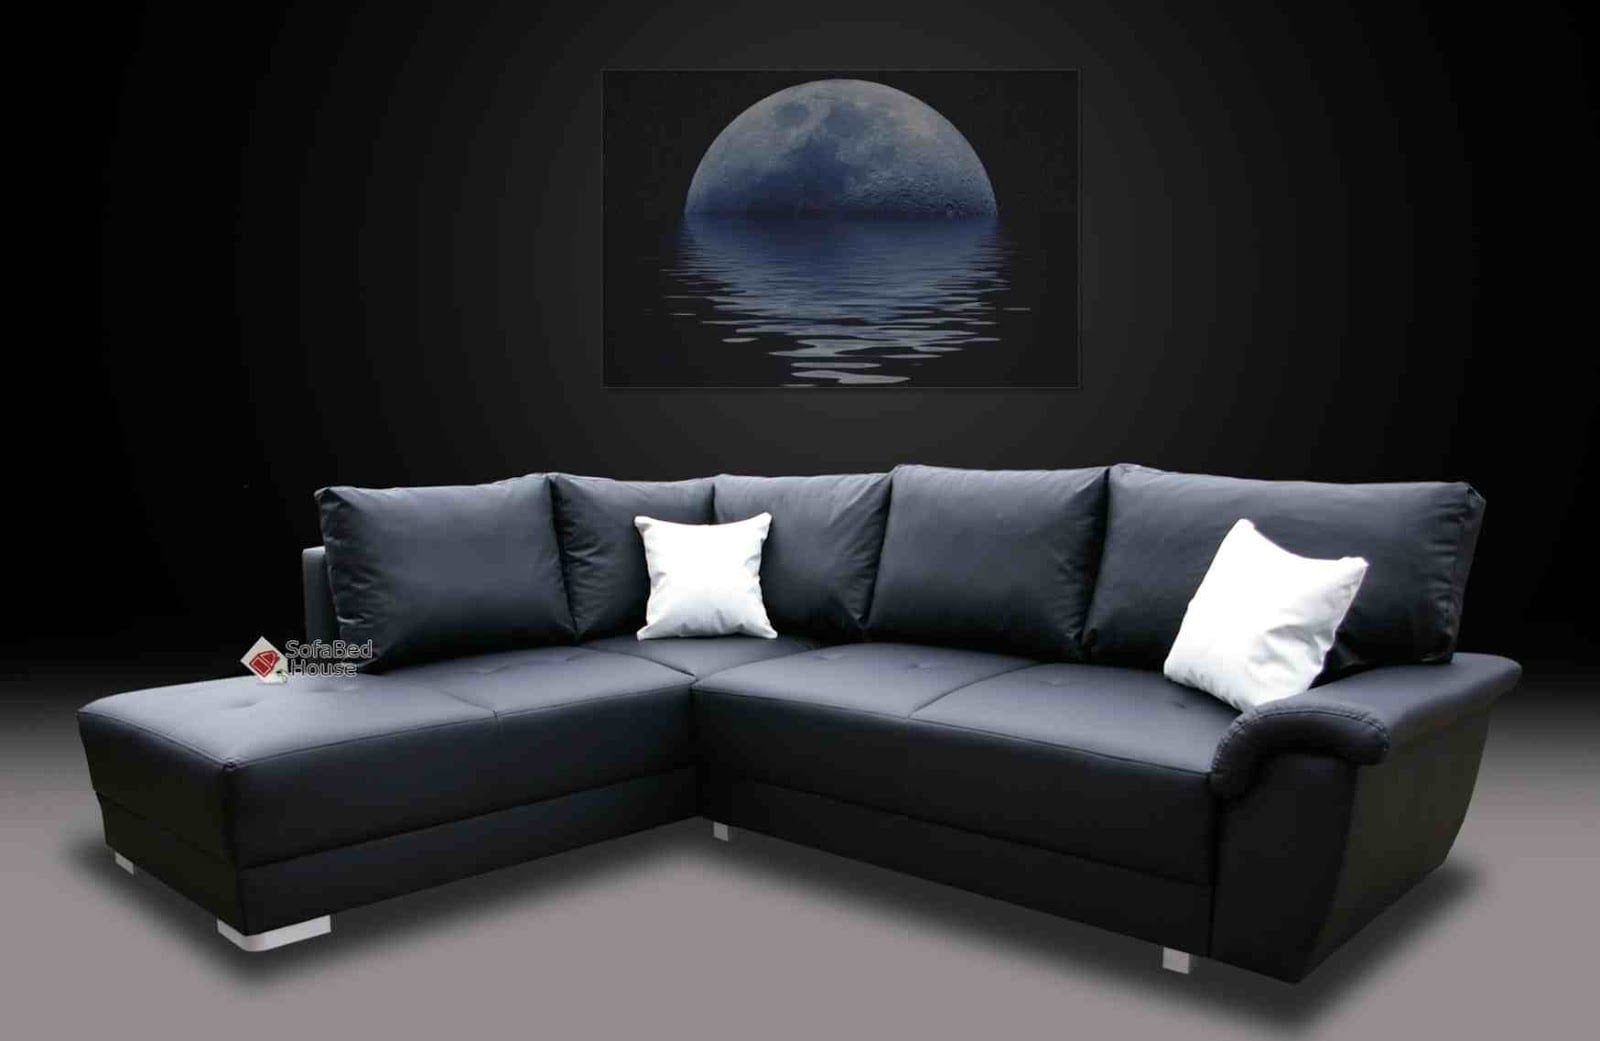 85 Ide Cantik Gambar Model Sofa Bed Minimalis Ini Bikin Indah Ruang Tamu Paling Terkenal